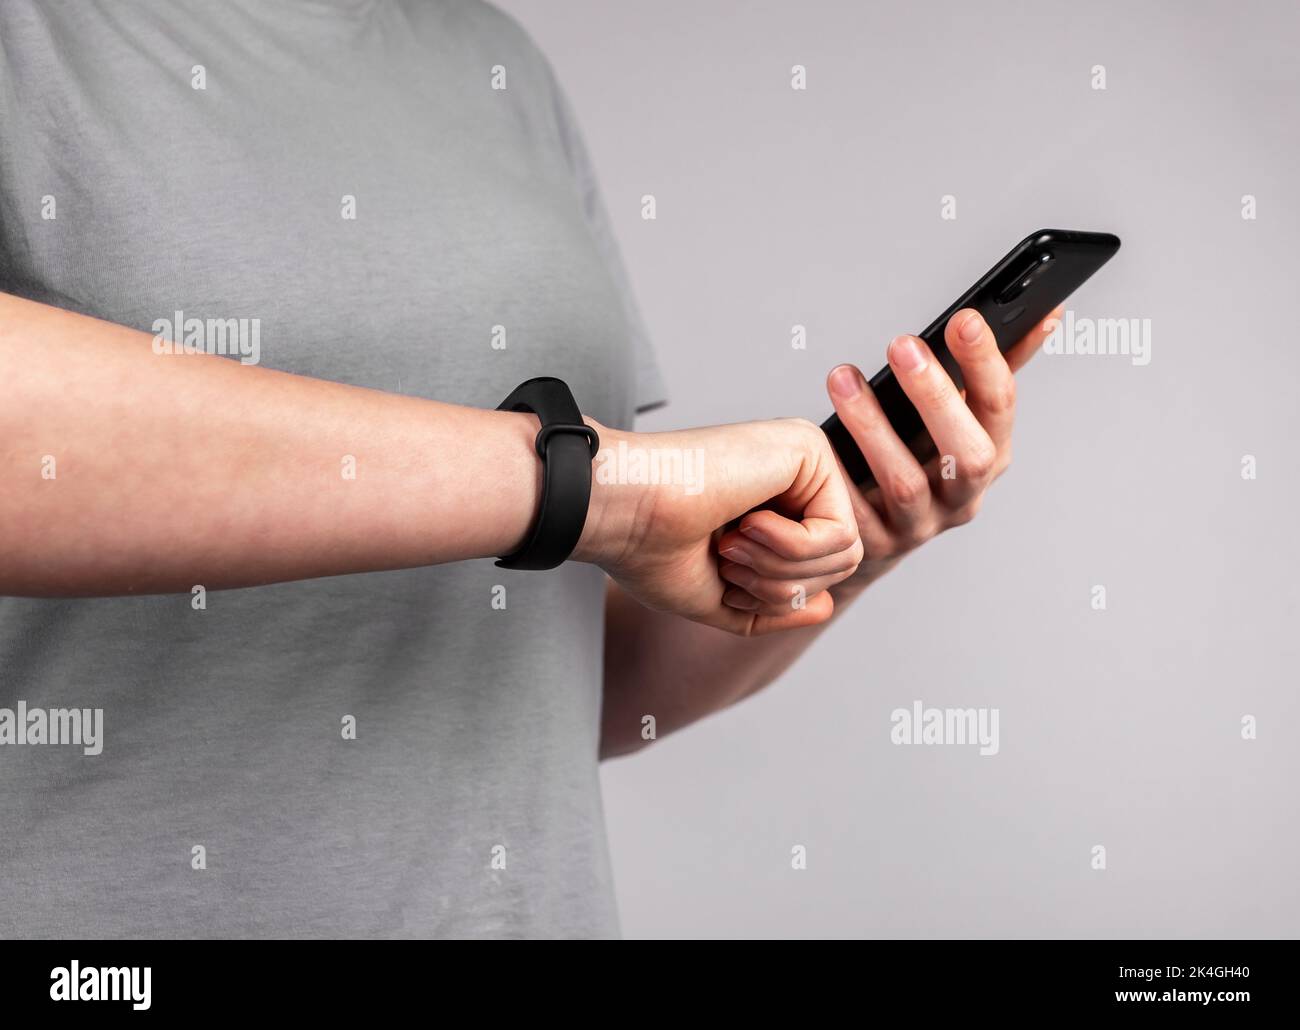 Applicazione per telefono cellulare per braccialetto sportivo e fitness intelligente, sincronizzazione smartwatch. Foto Stock